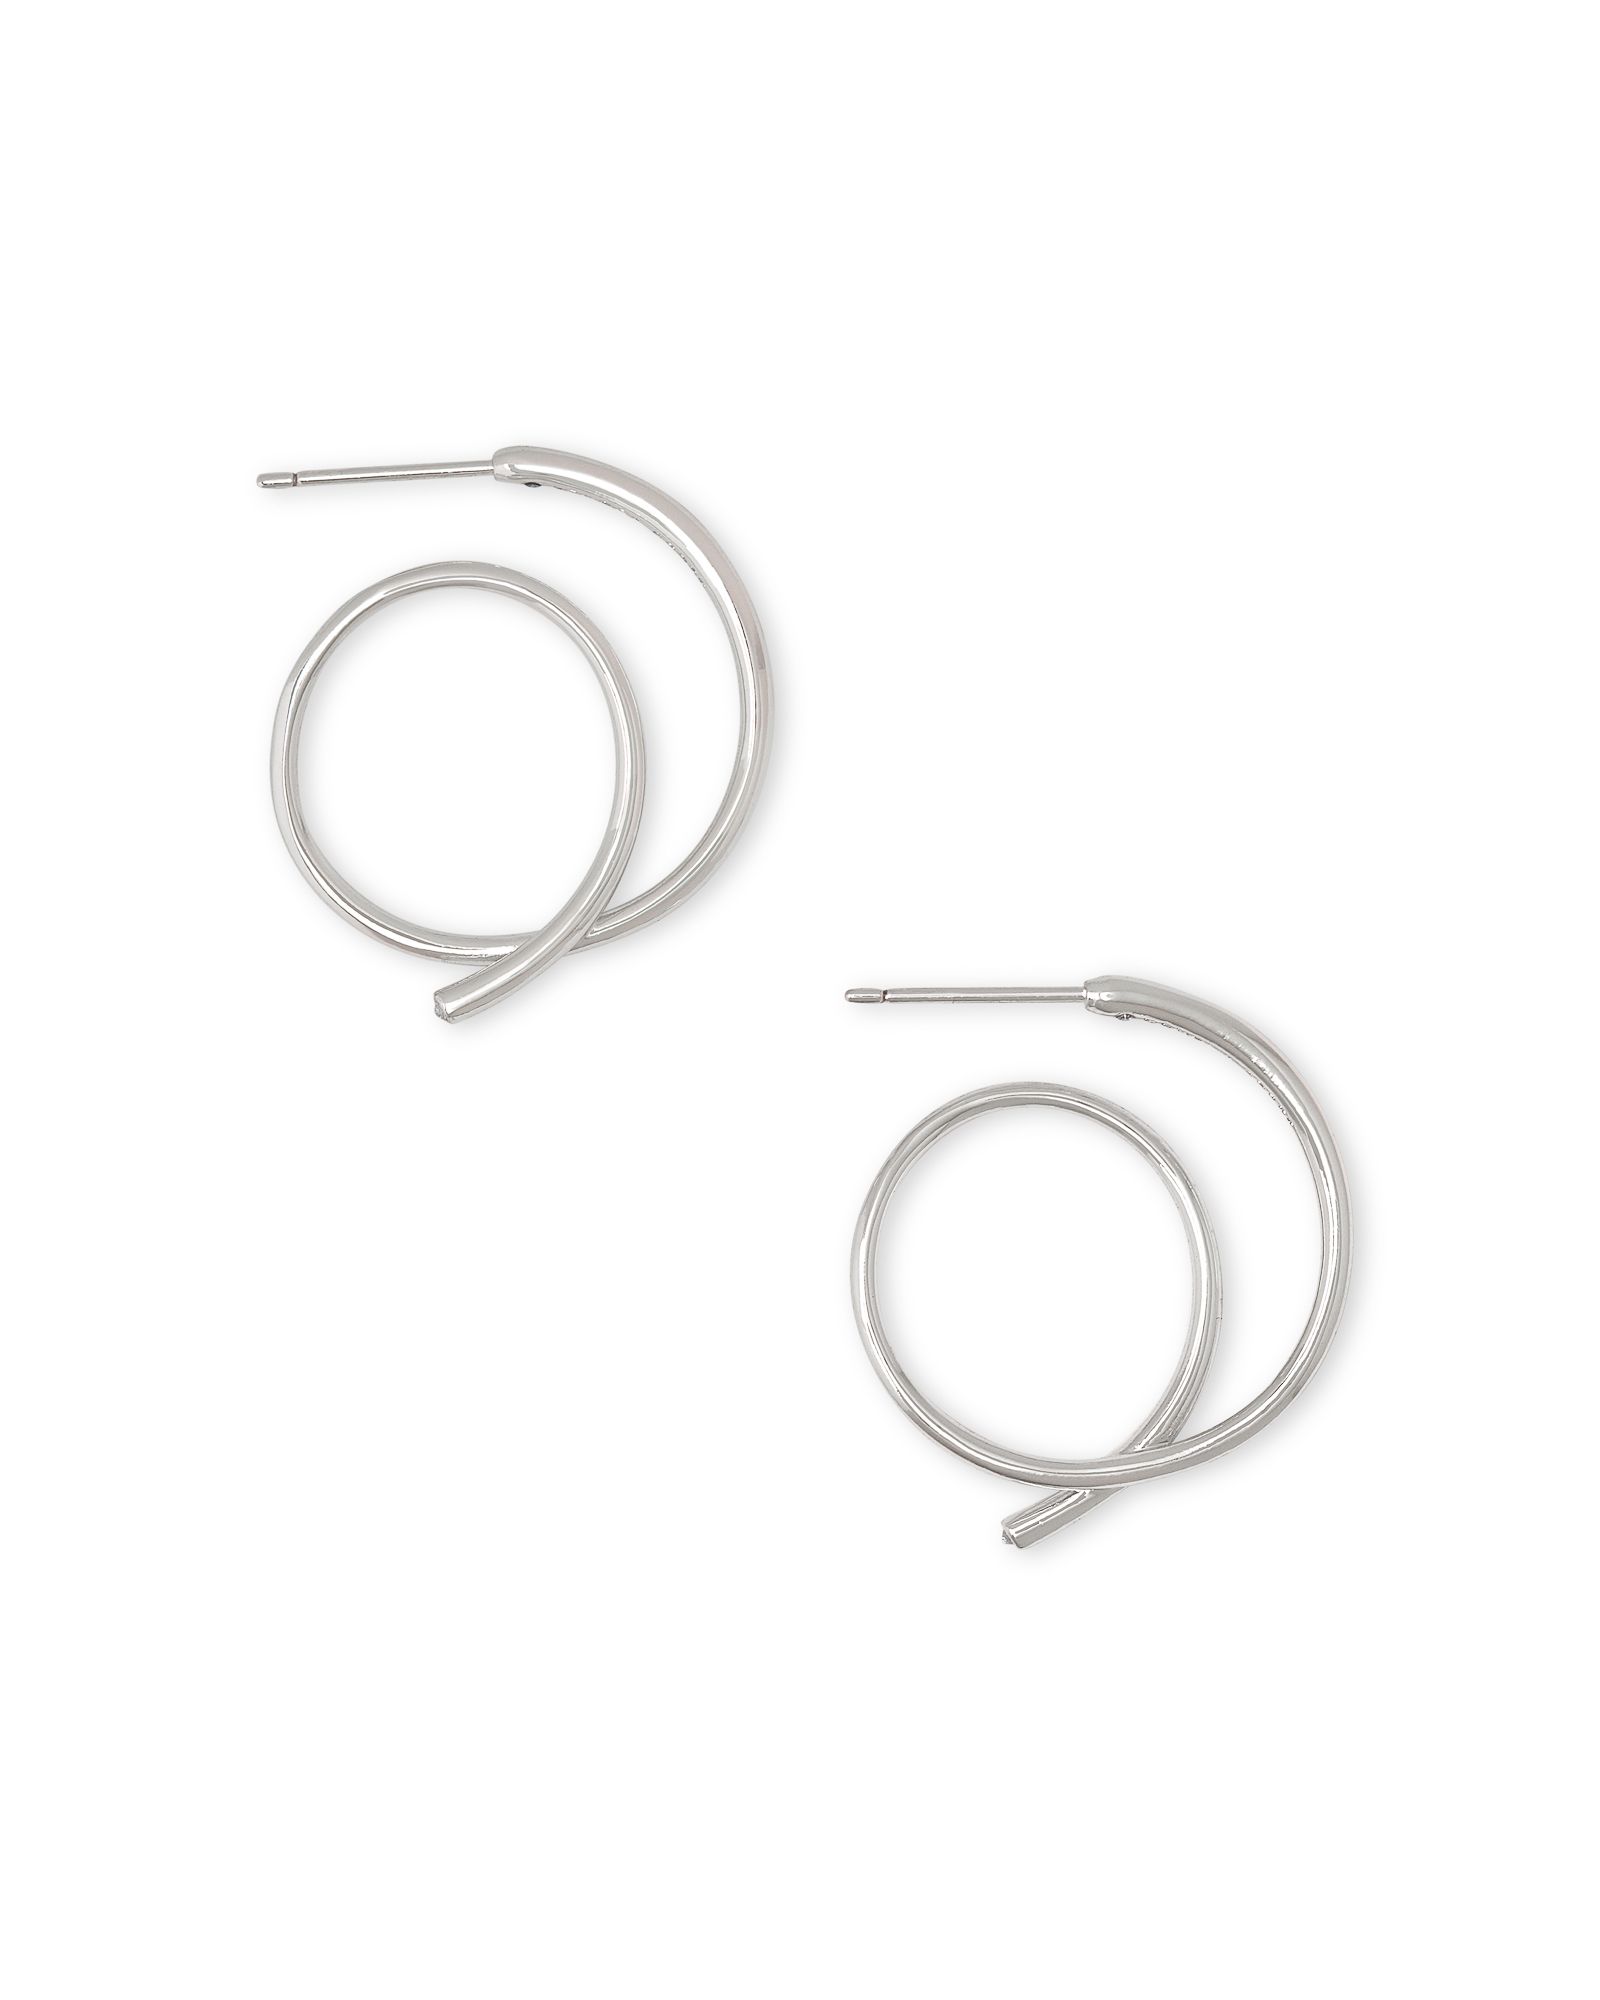 Myles Small Hoop Earrings in Silver | Kendra Scott